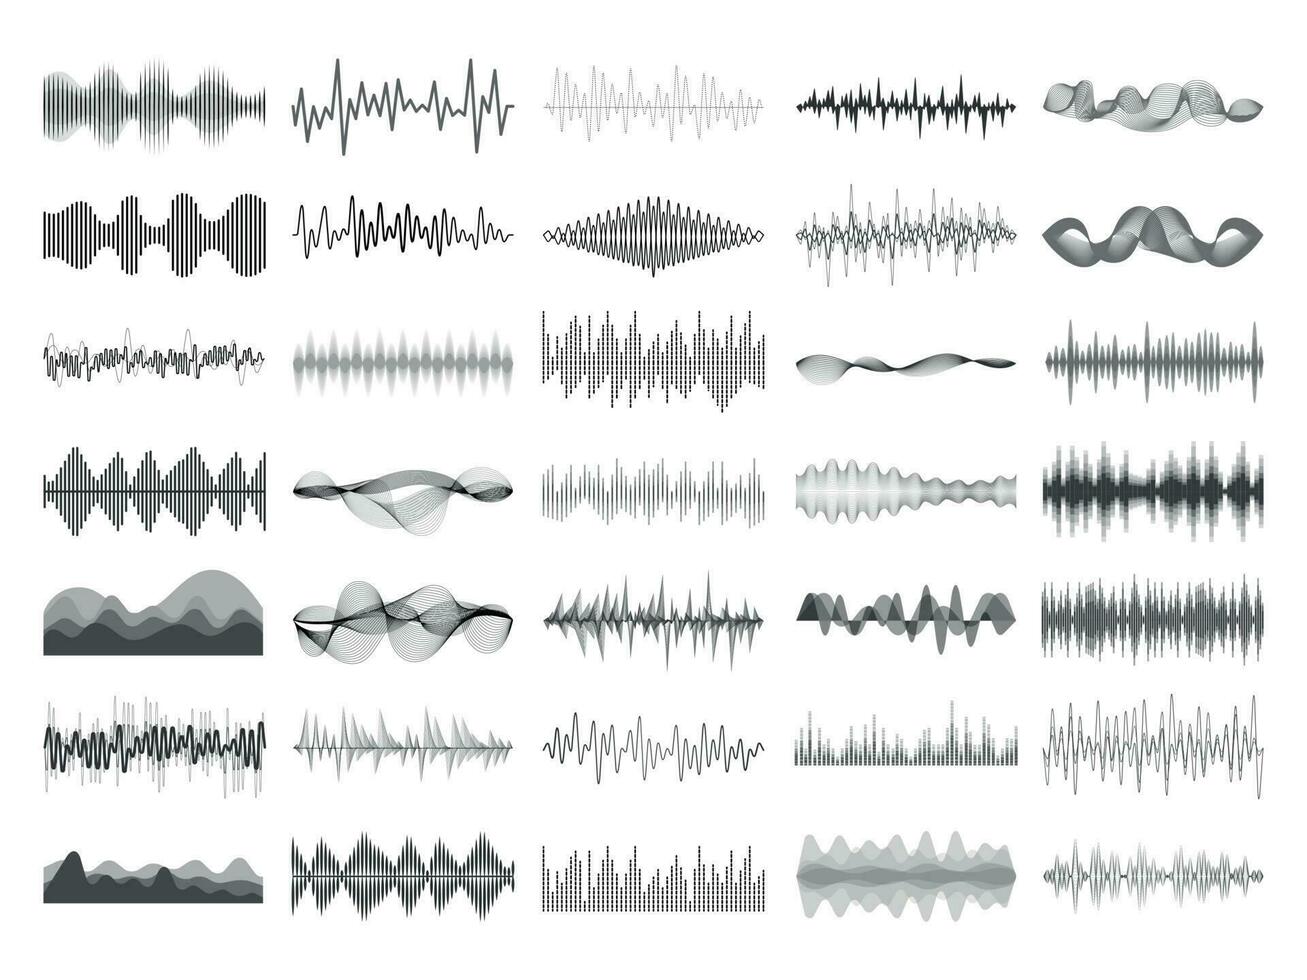 suono onda e musica digitale equalizzatore pannello. onda sonora ampiezza sonico battere pulse voce visualizzazione vettore illustrazione